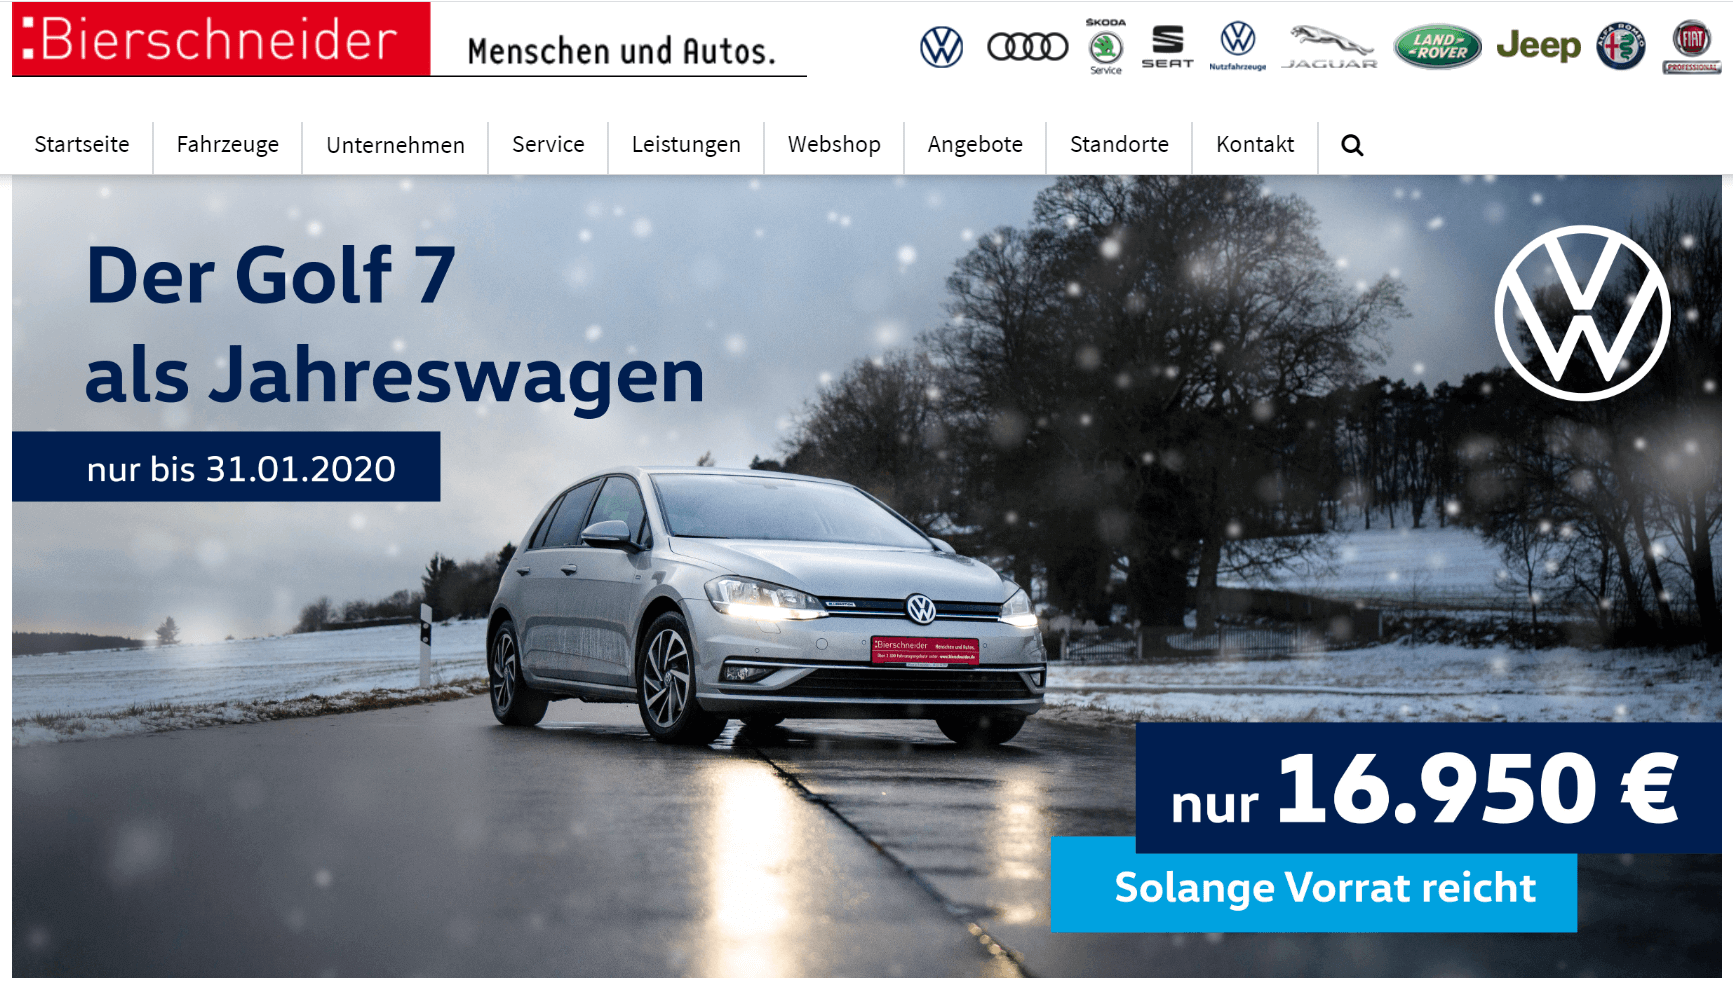 Volkswagen Golf VII-Jahreswagen-Knalleraktion bei Bierschneider